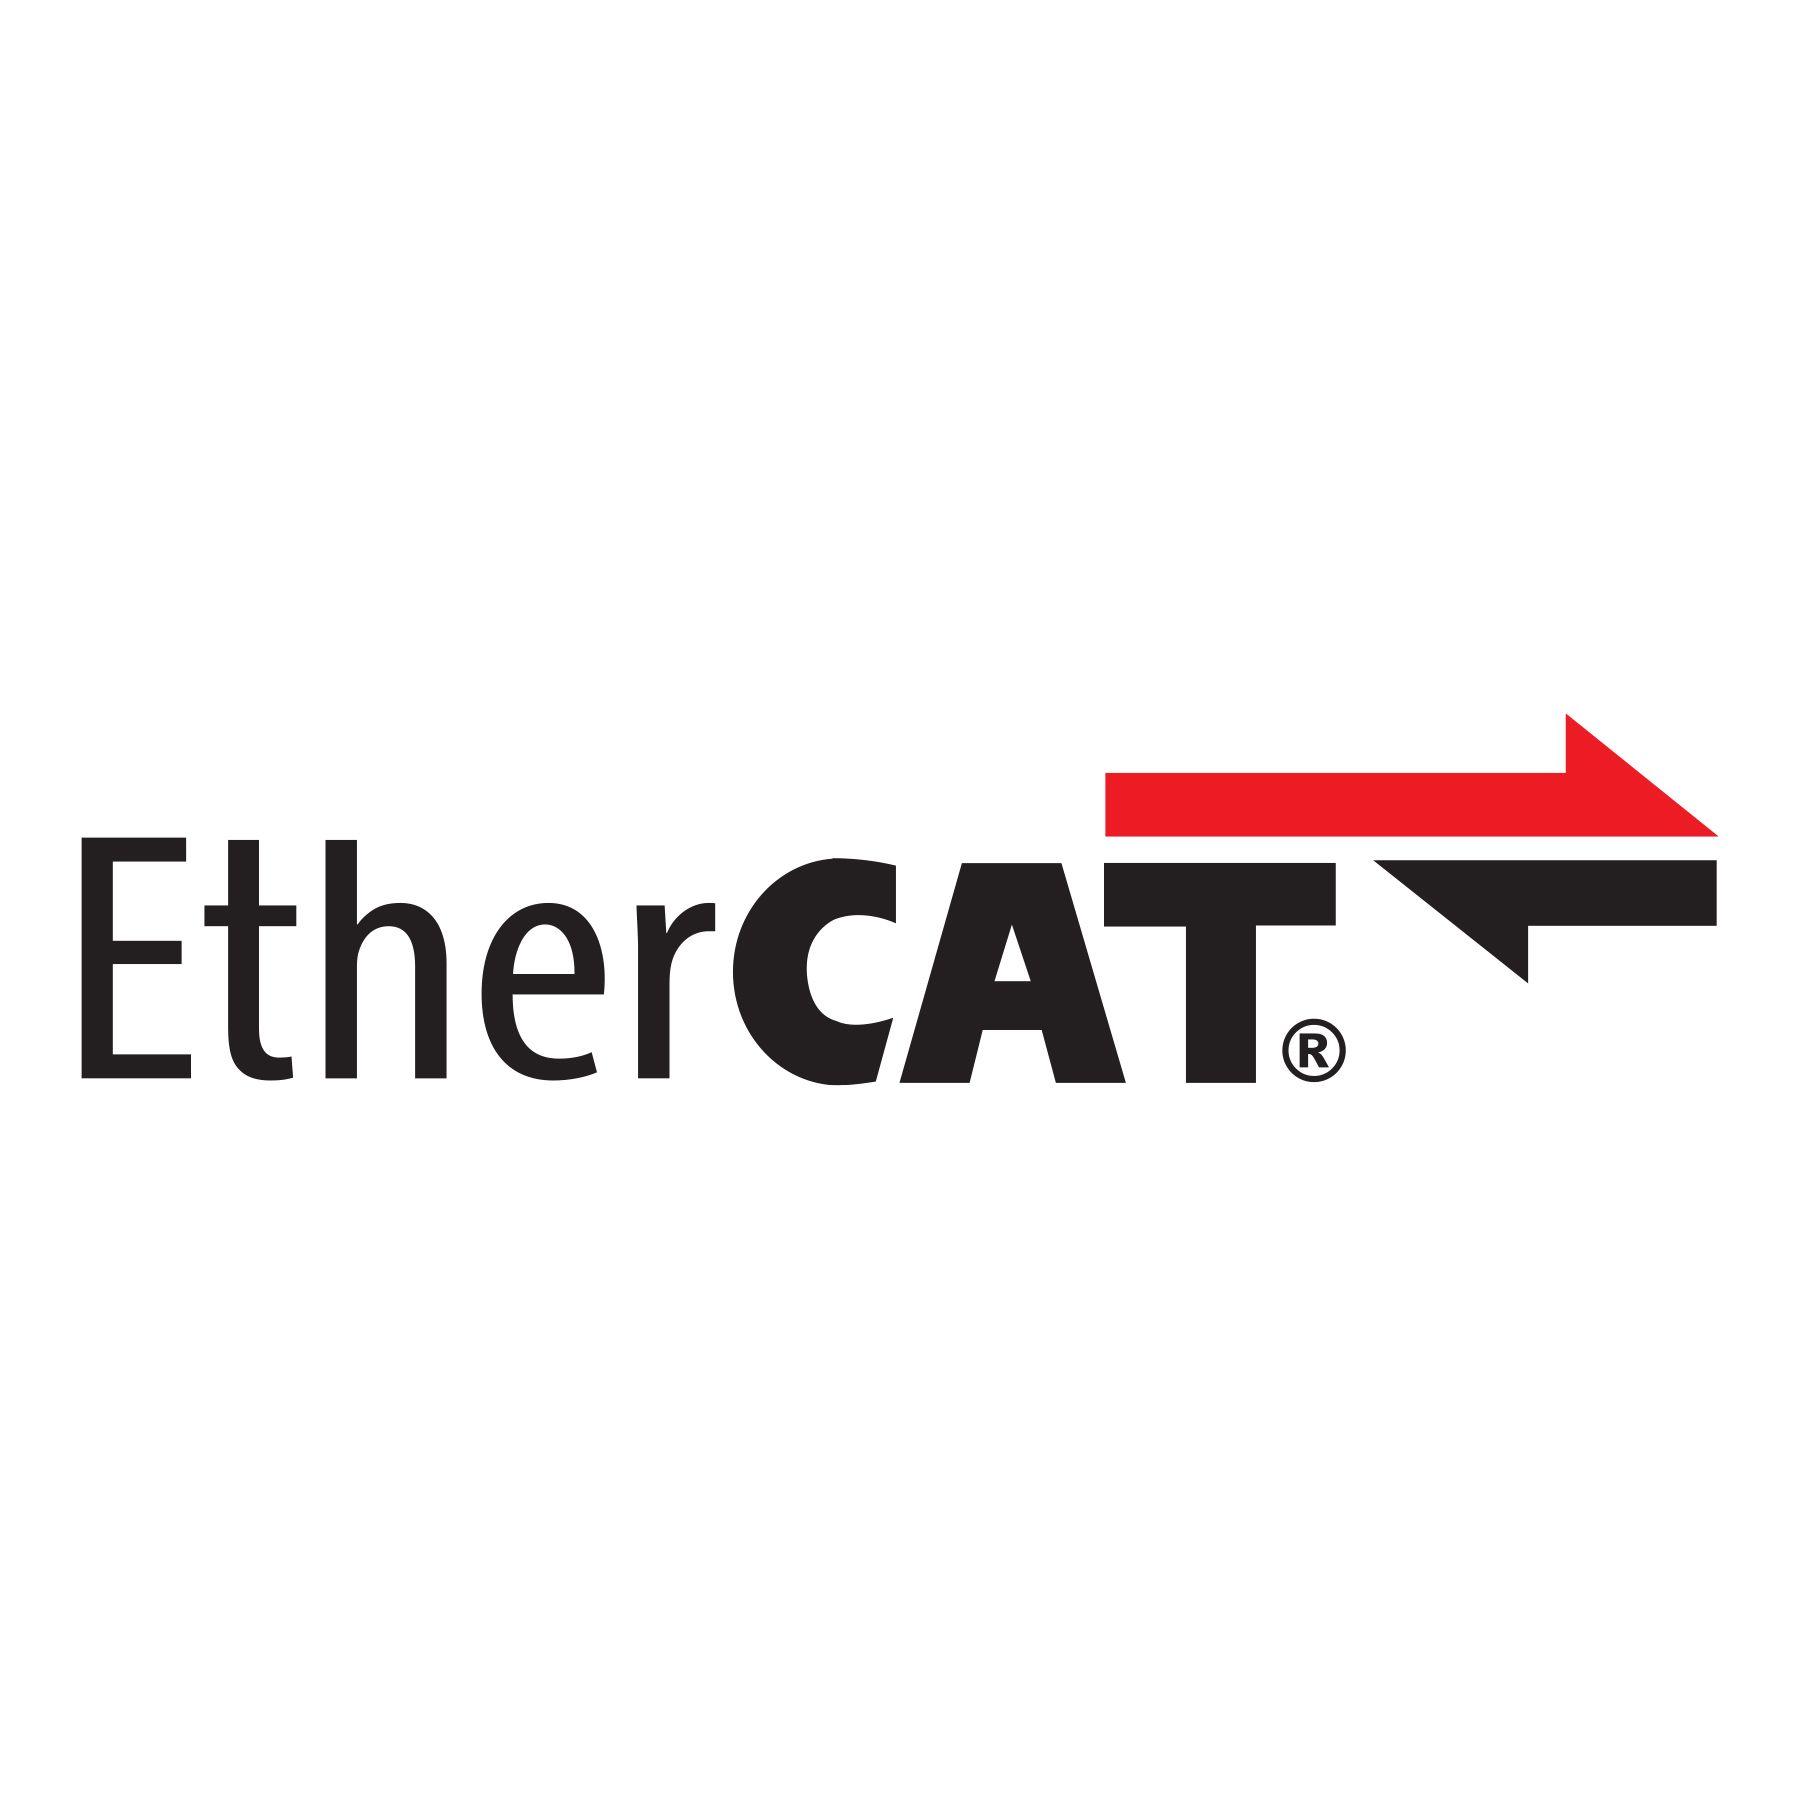 EtherCAT Logo - EtherCAT logo HiRes